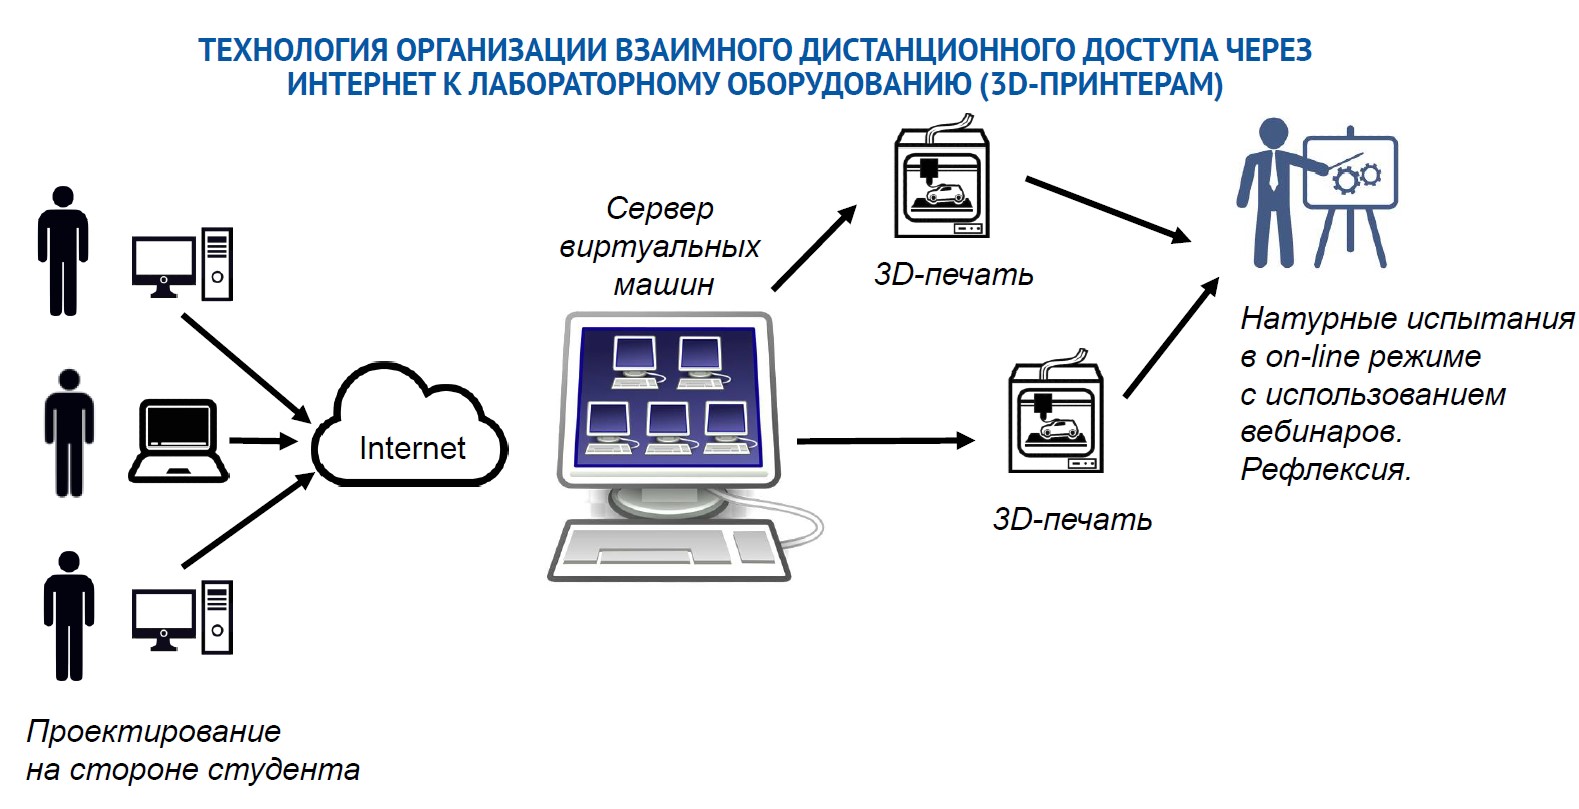 Рис. 2.2. Схема организации взаимного дистанционного доступа через сеть Интернет к лабораторному оборудованию (3D-принтерам)